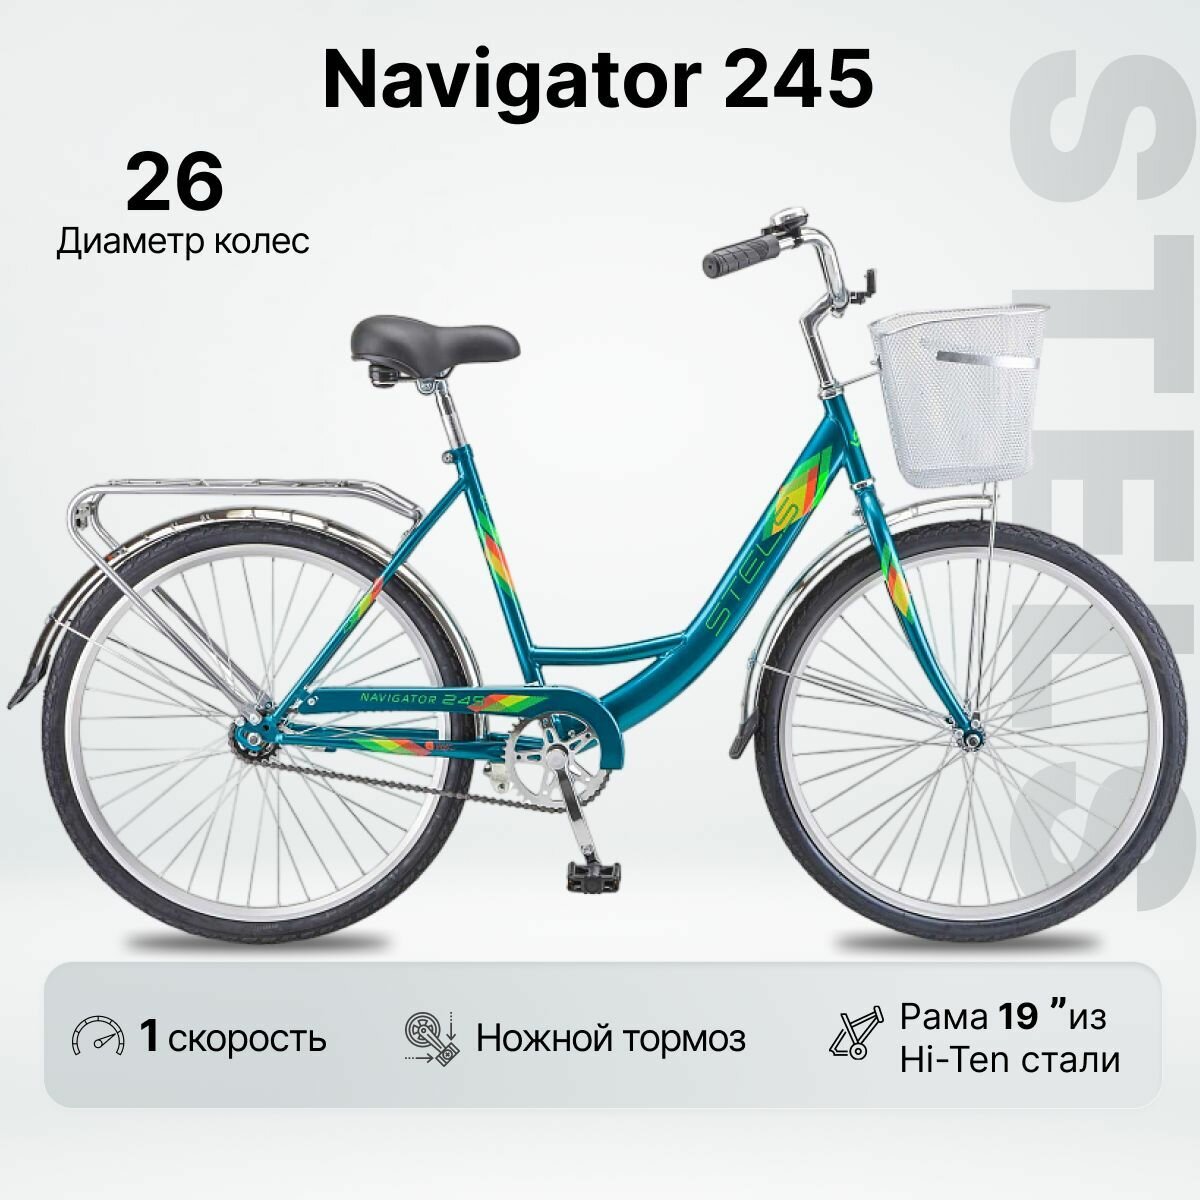 Велосипед Городской Stels Navigator 245 (26" колесо) морская волна, рама 19"